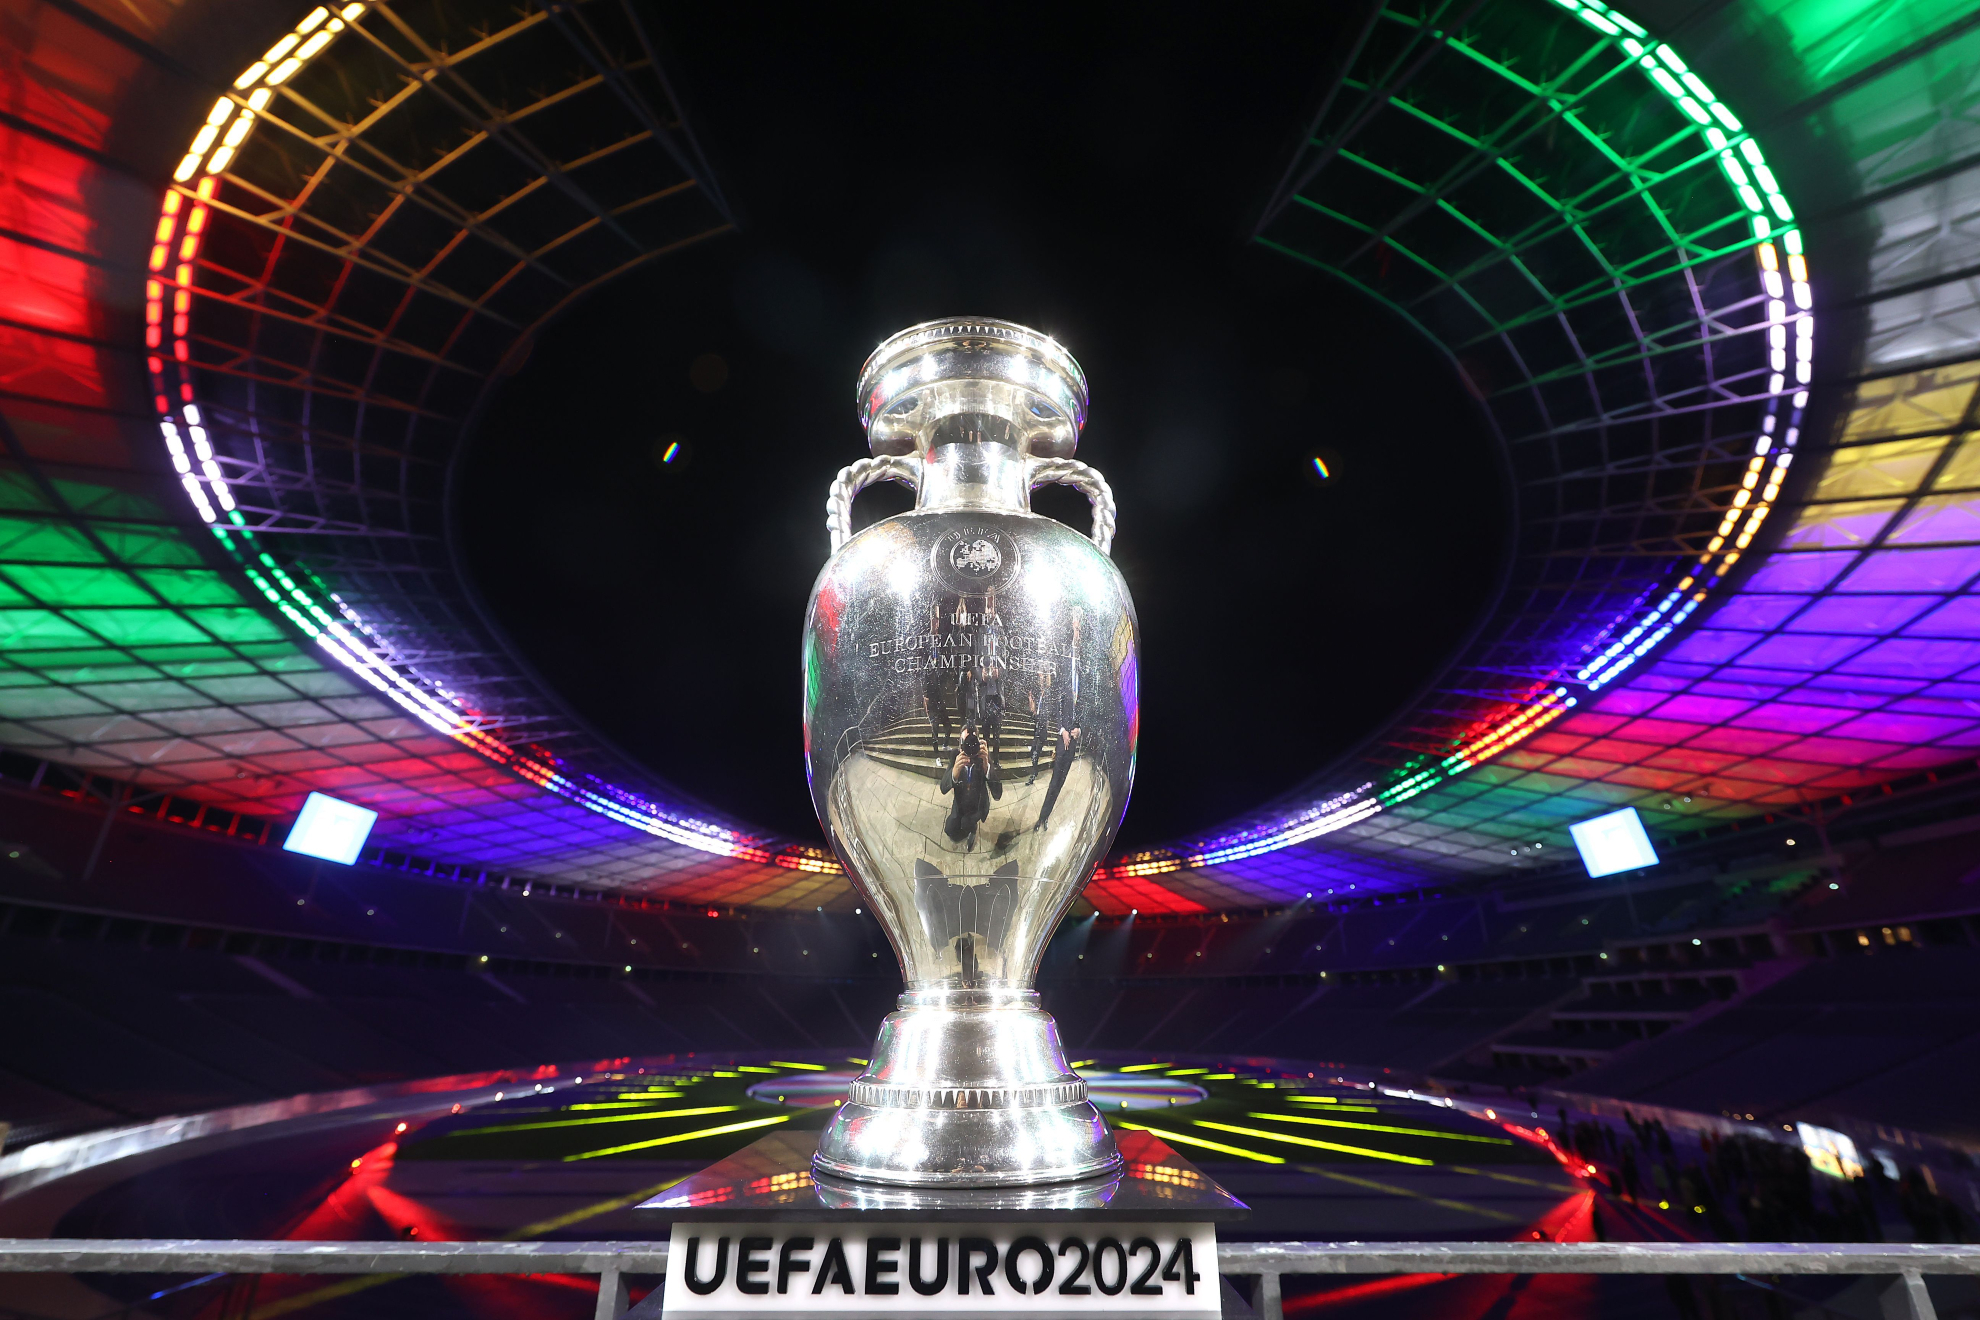 El trofeo en el Olympiastadion de Berlín durante la presentación de la EURO 2024. | Getty Images